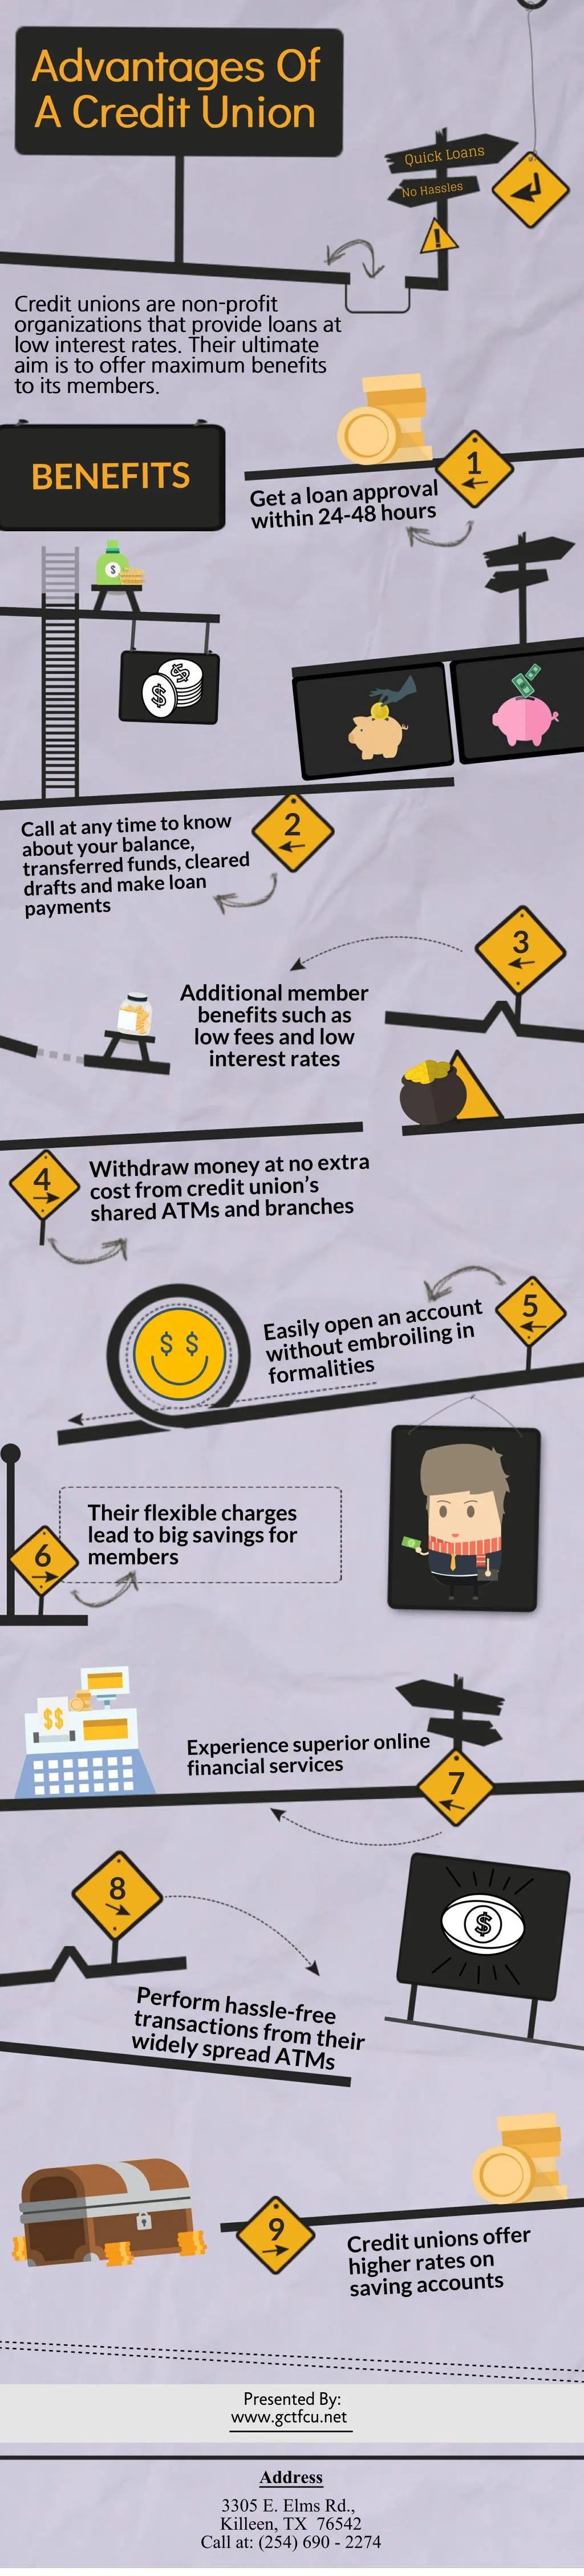 advantages of advantages of a credit union